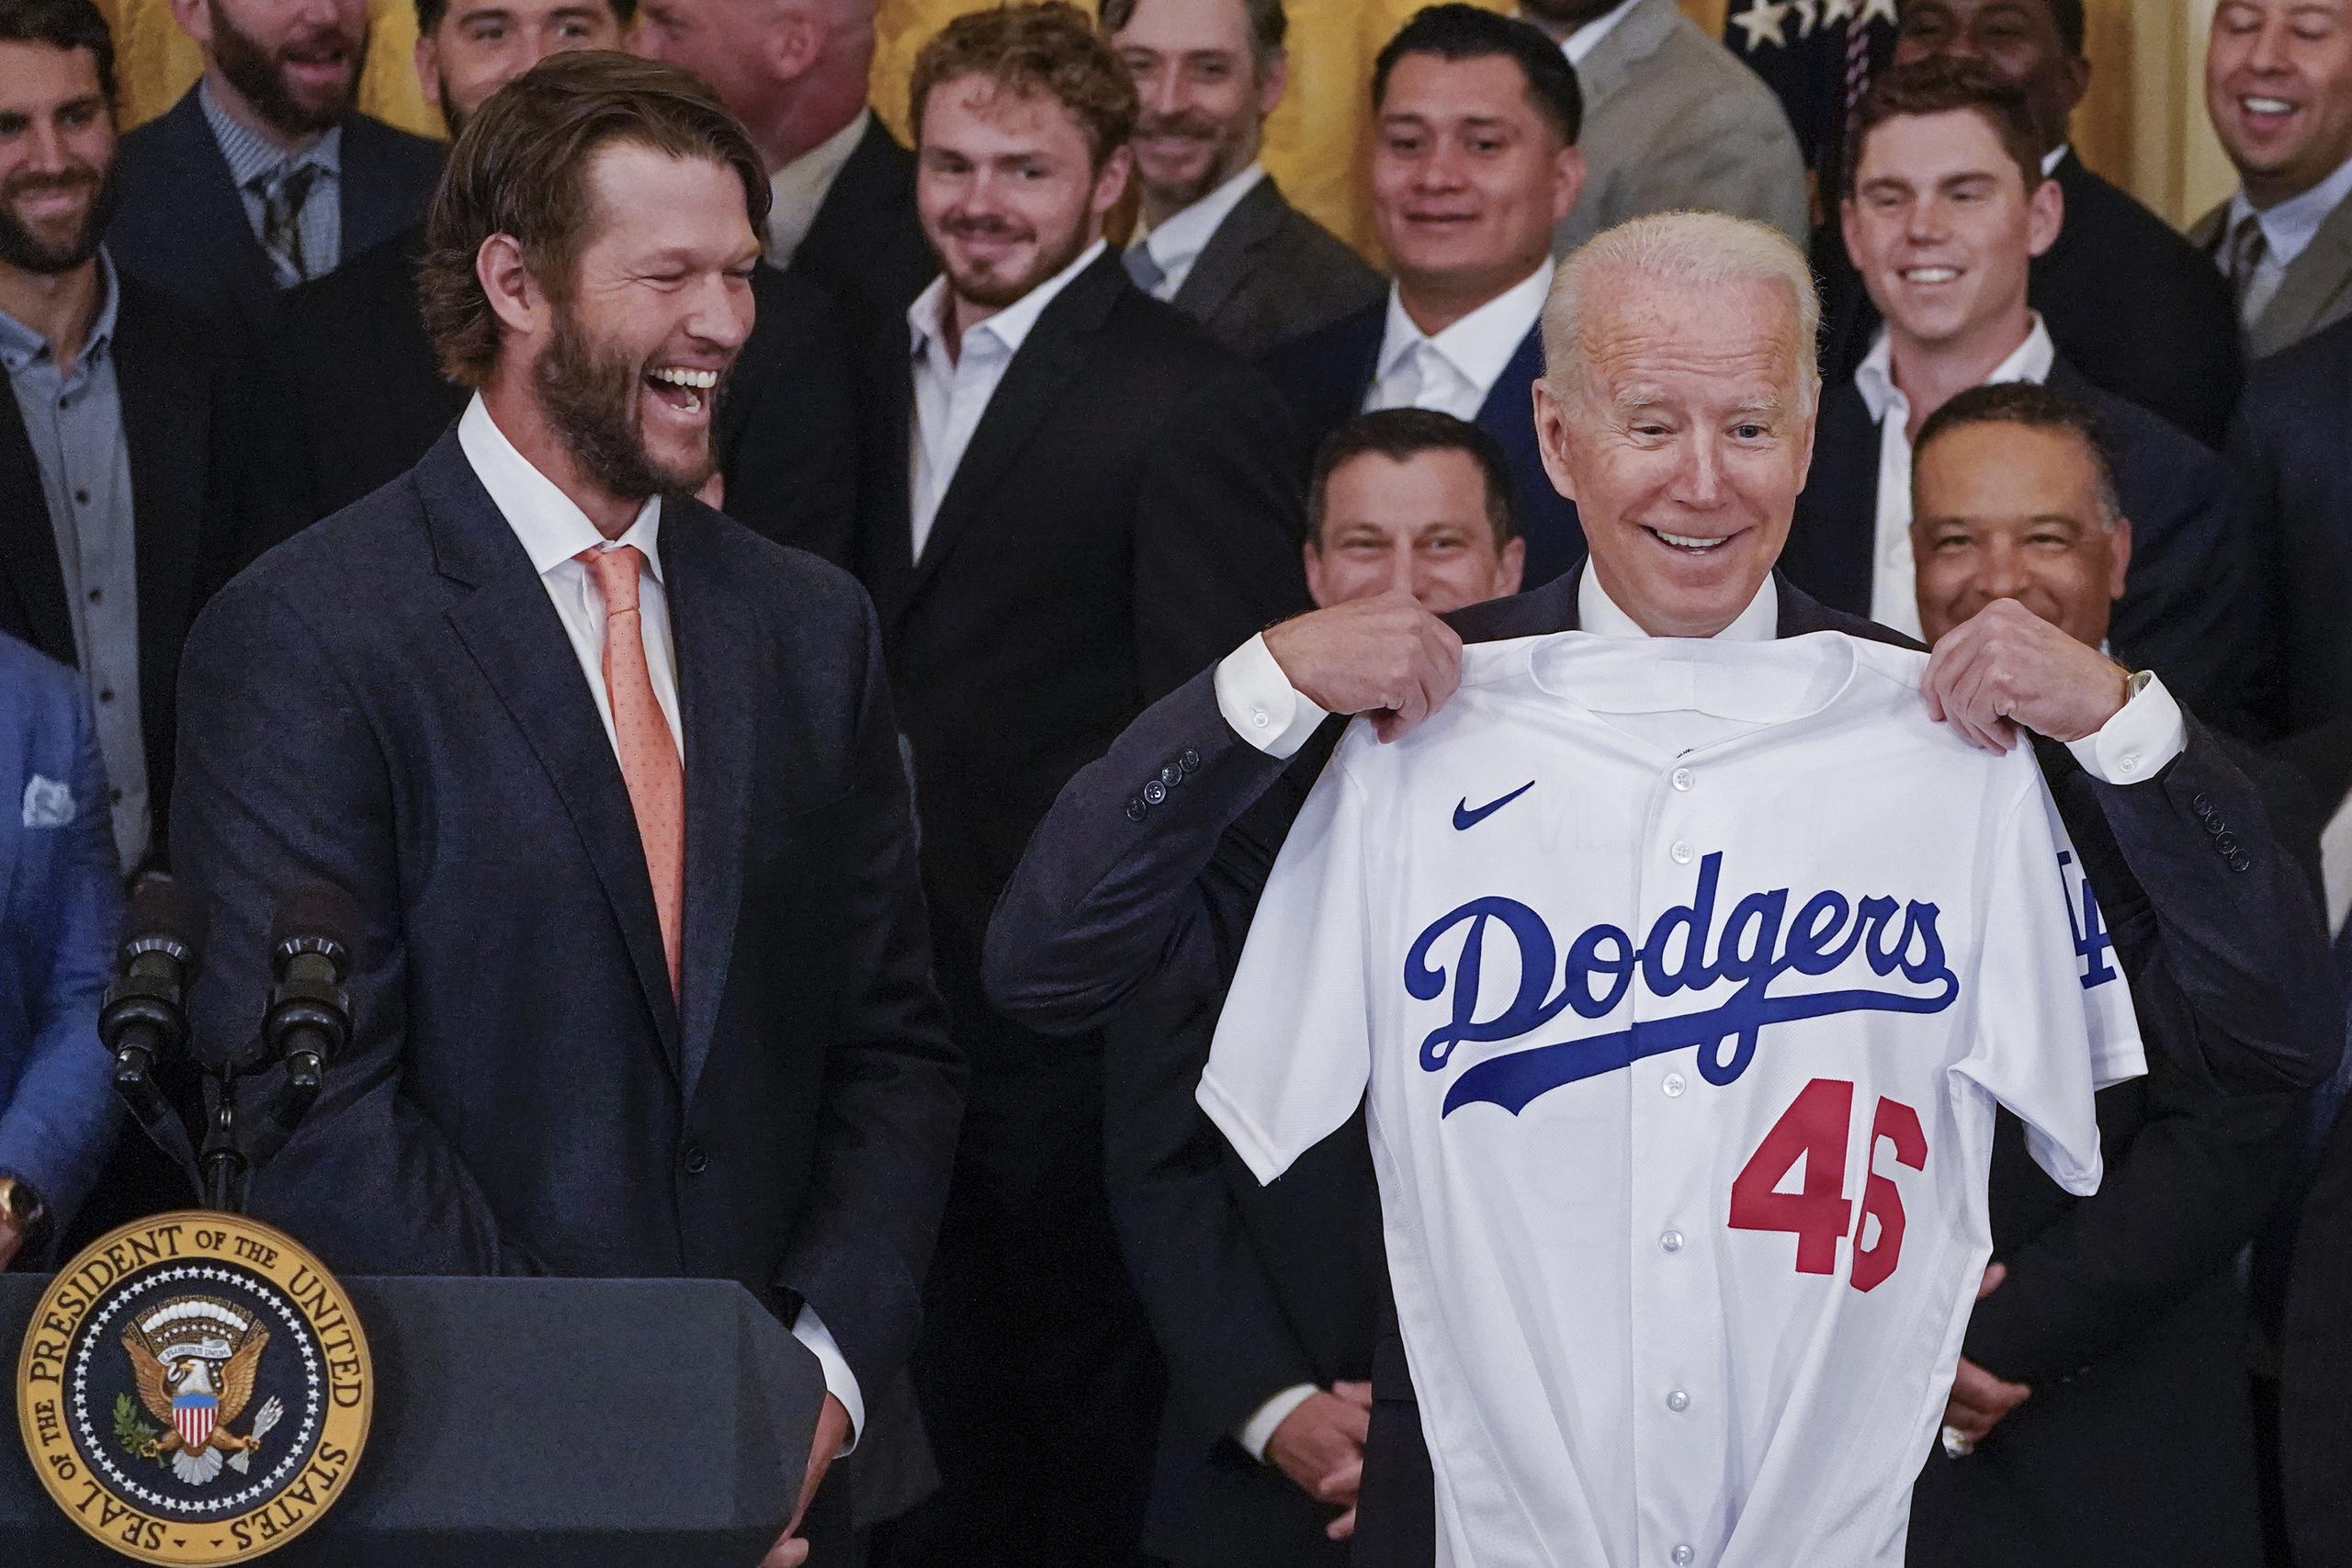 El as de los Dodgers de Los Angeles, Clayton Kershaw, reacciona mientras el presidente Joe Biden levanta la camisa de los Dodgers que le fue obsequiada durante la ceremonia del viernes.